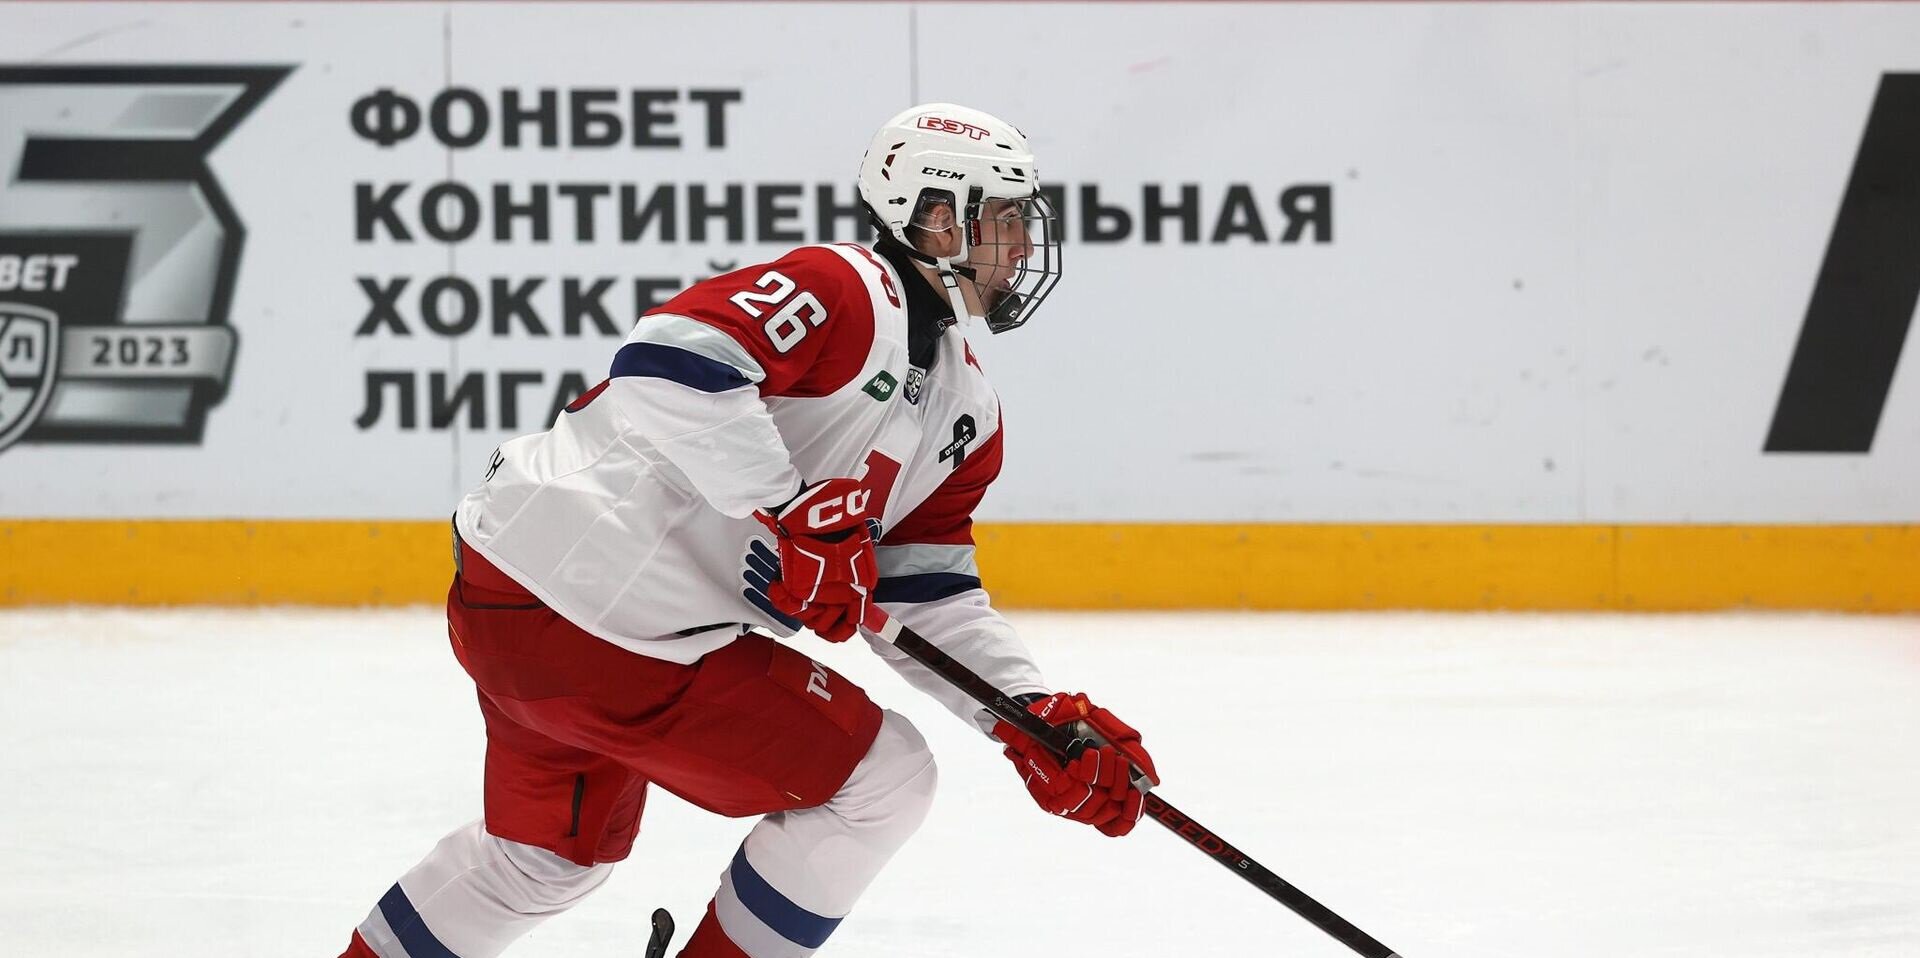 Симашев о контракте с Локомотивом: Два года  хороший срок, чтобы стать лидером и отправиться в НХЛ готовым игроком. Я намерен играть в топ-4 защитник